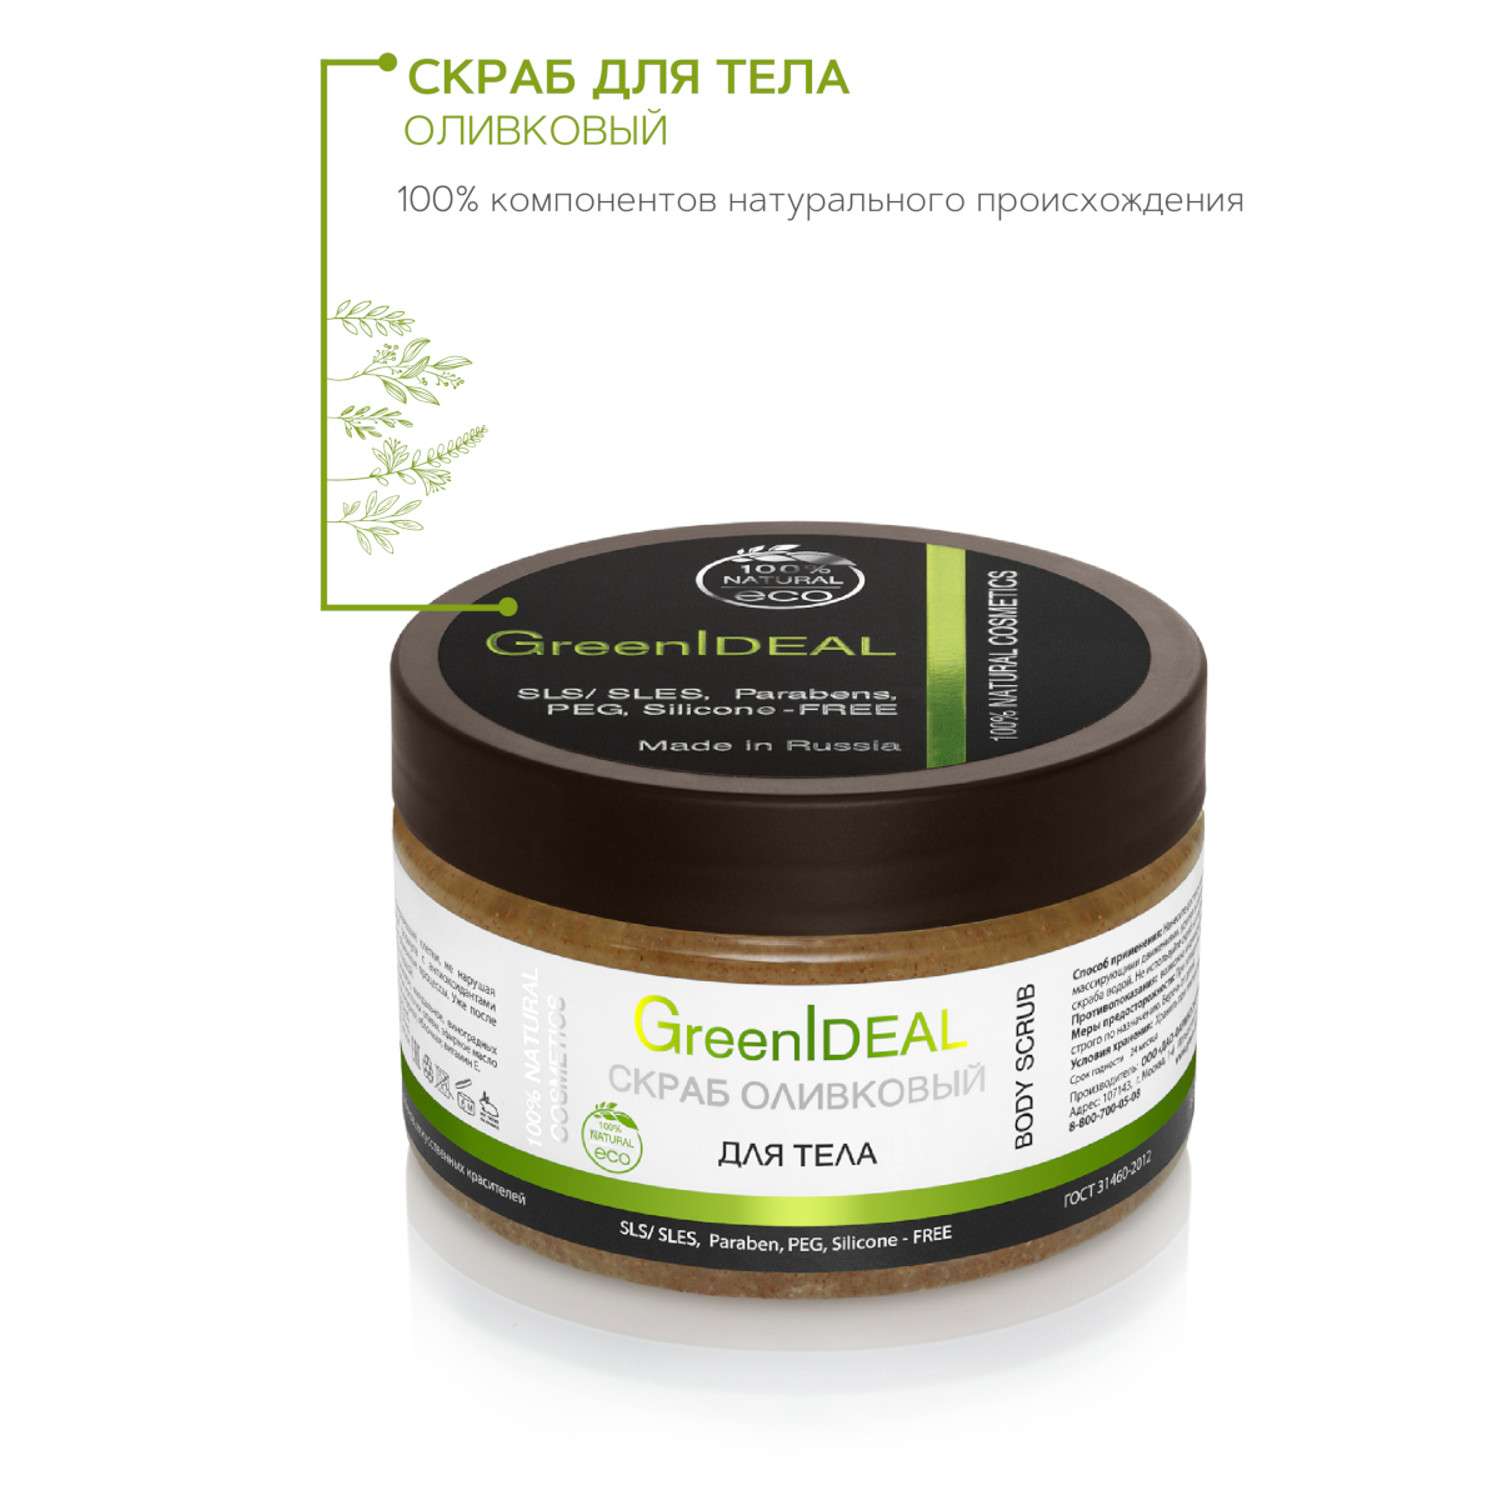 Скраб оливковый GreenIDEAL для тела 05009 - фото 2